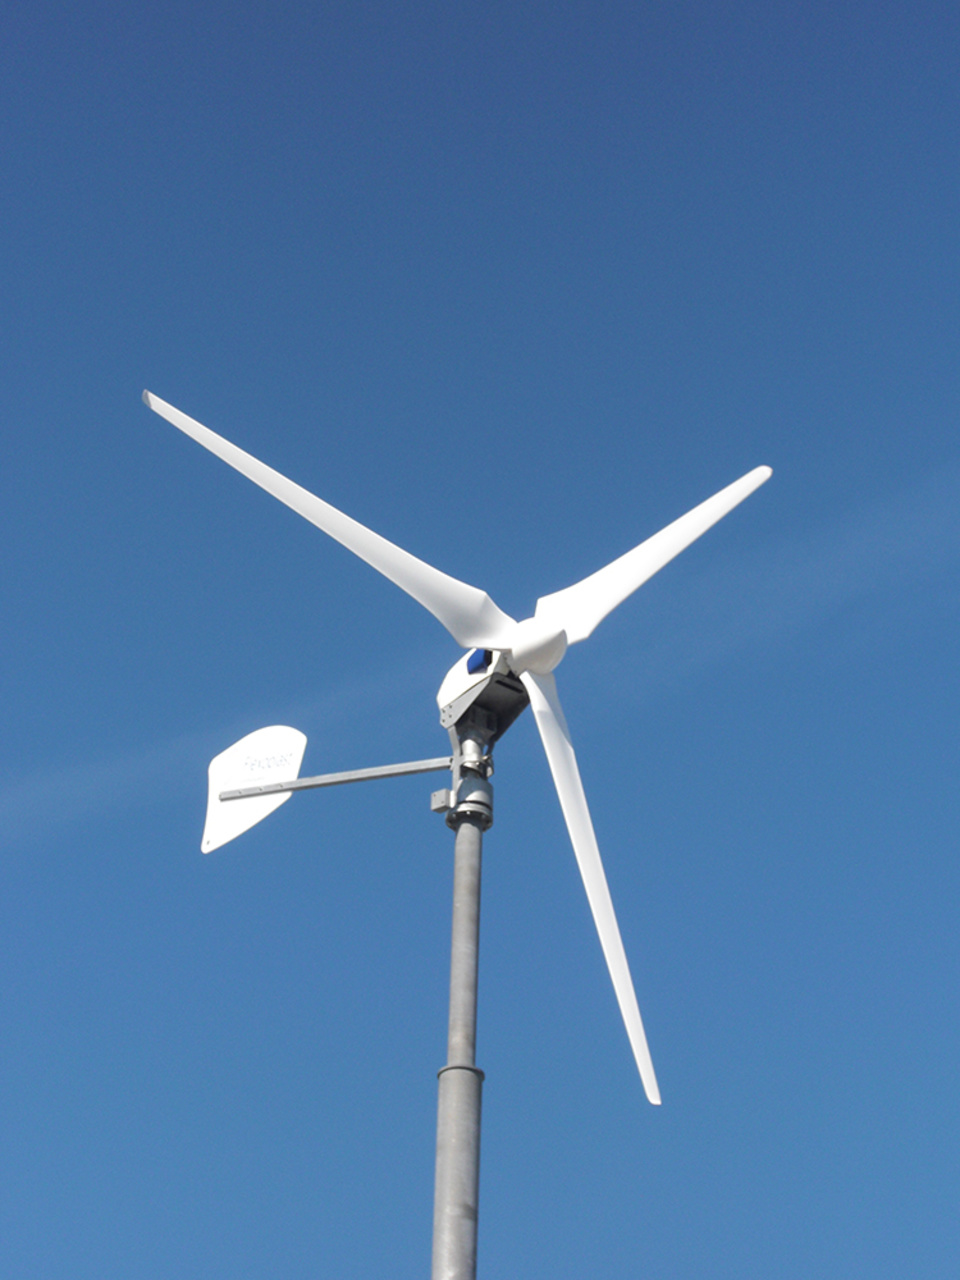 Windkraft2 bei Alarm- & Sicherheitstechnik Michael Krügel in Apolda